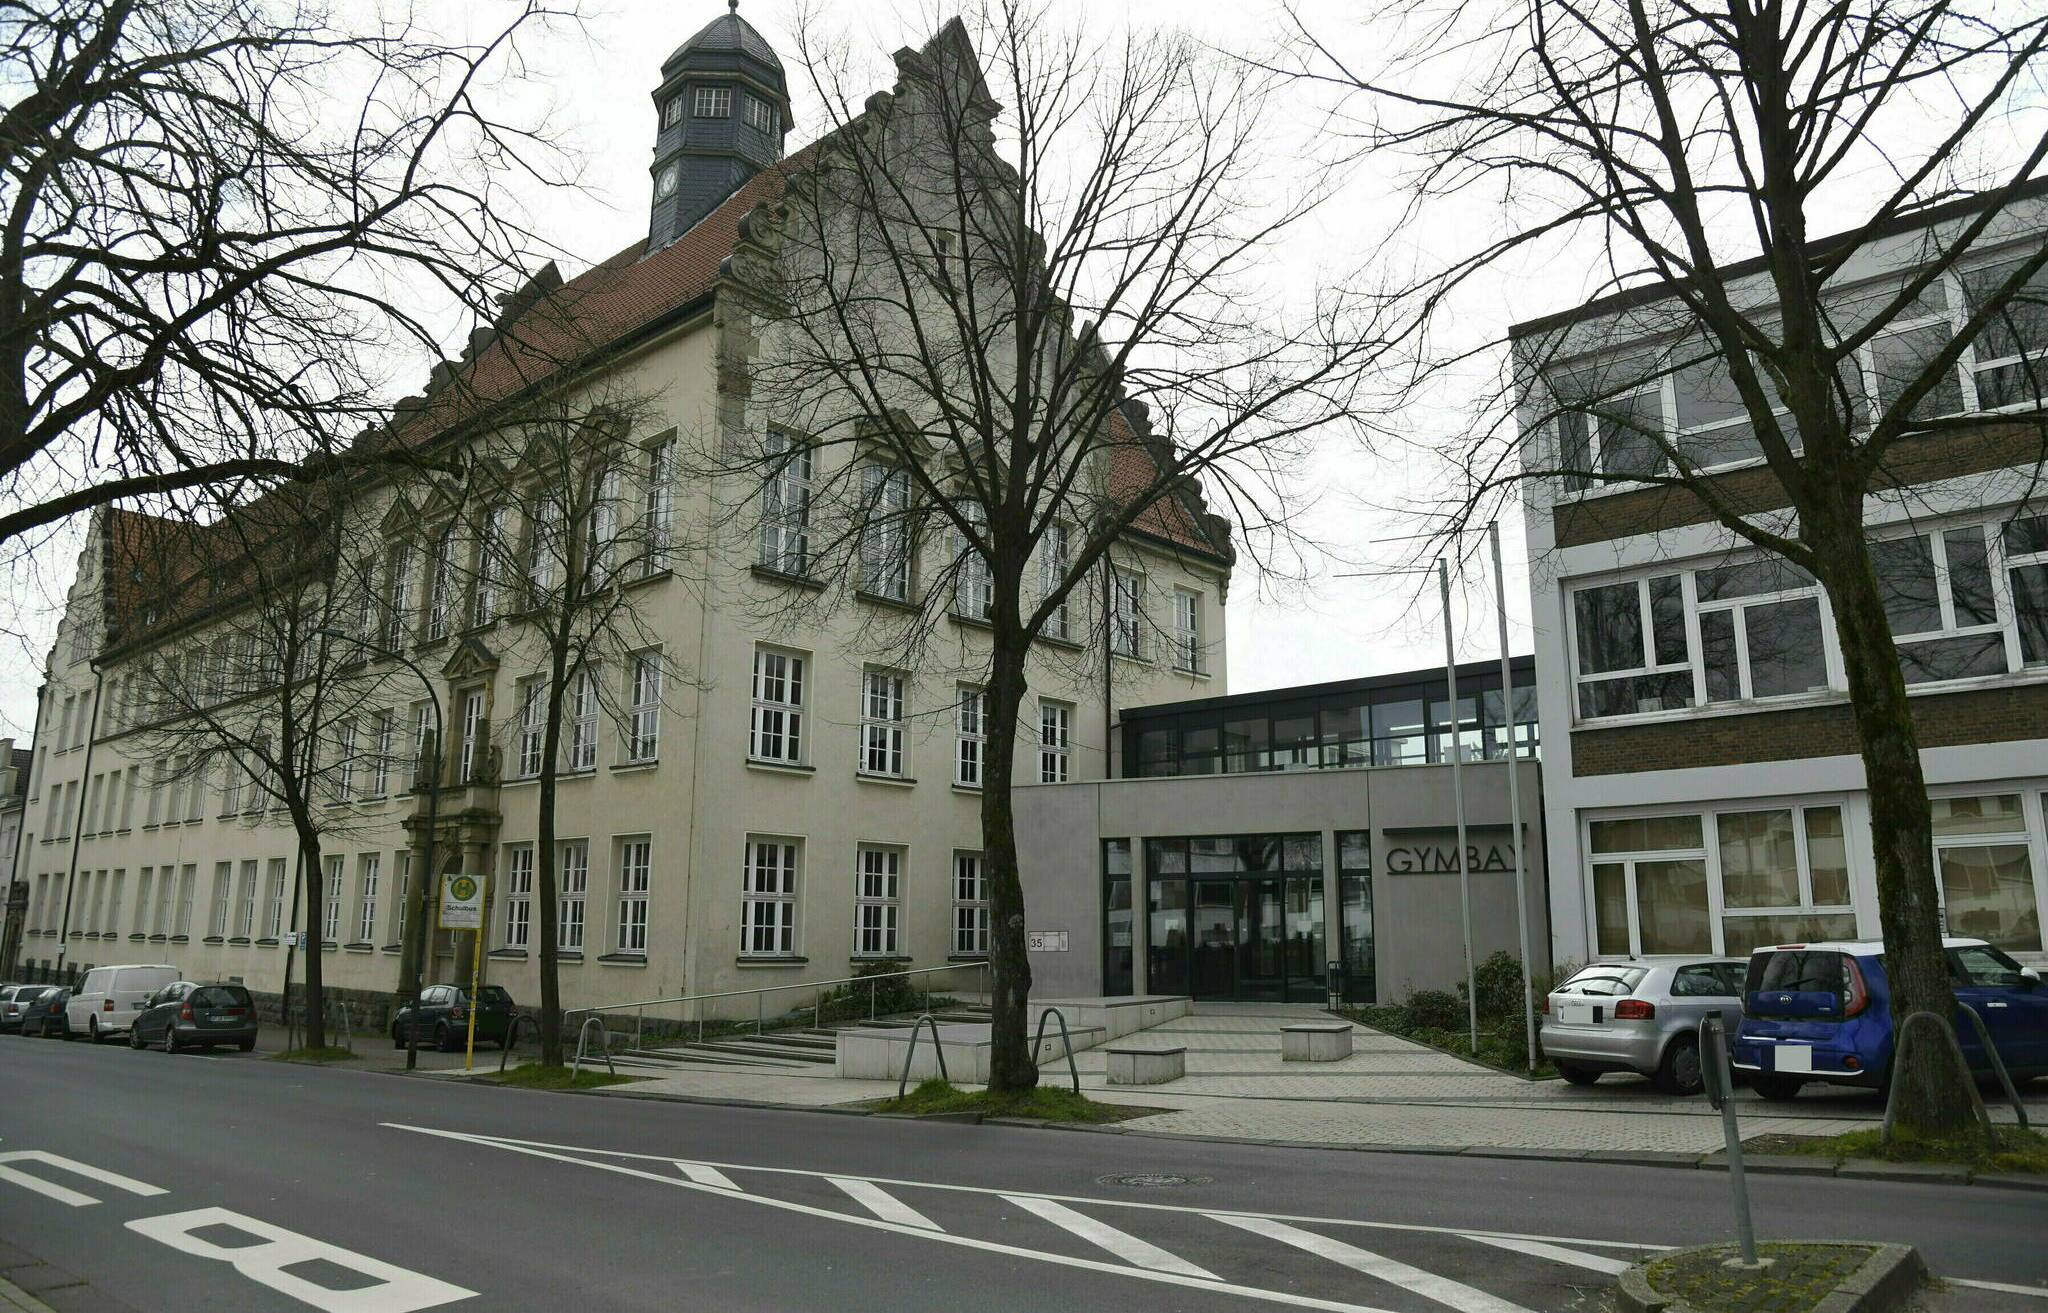  Das Gymnasium an der Bayreuther Straße. 